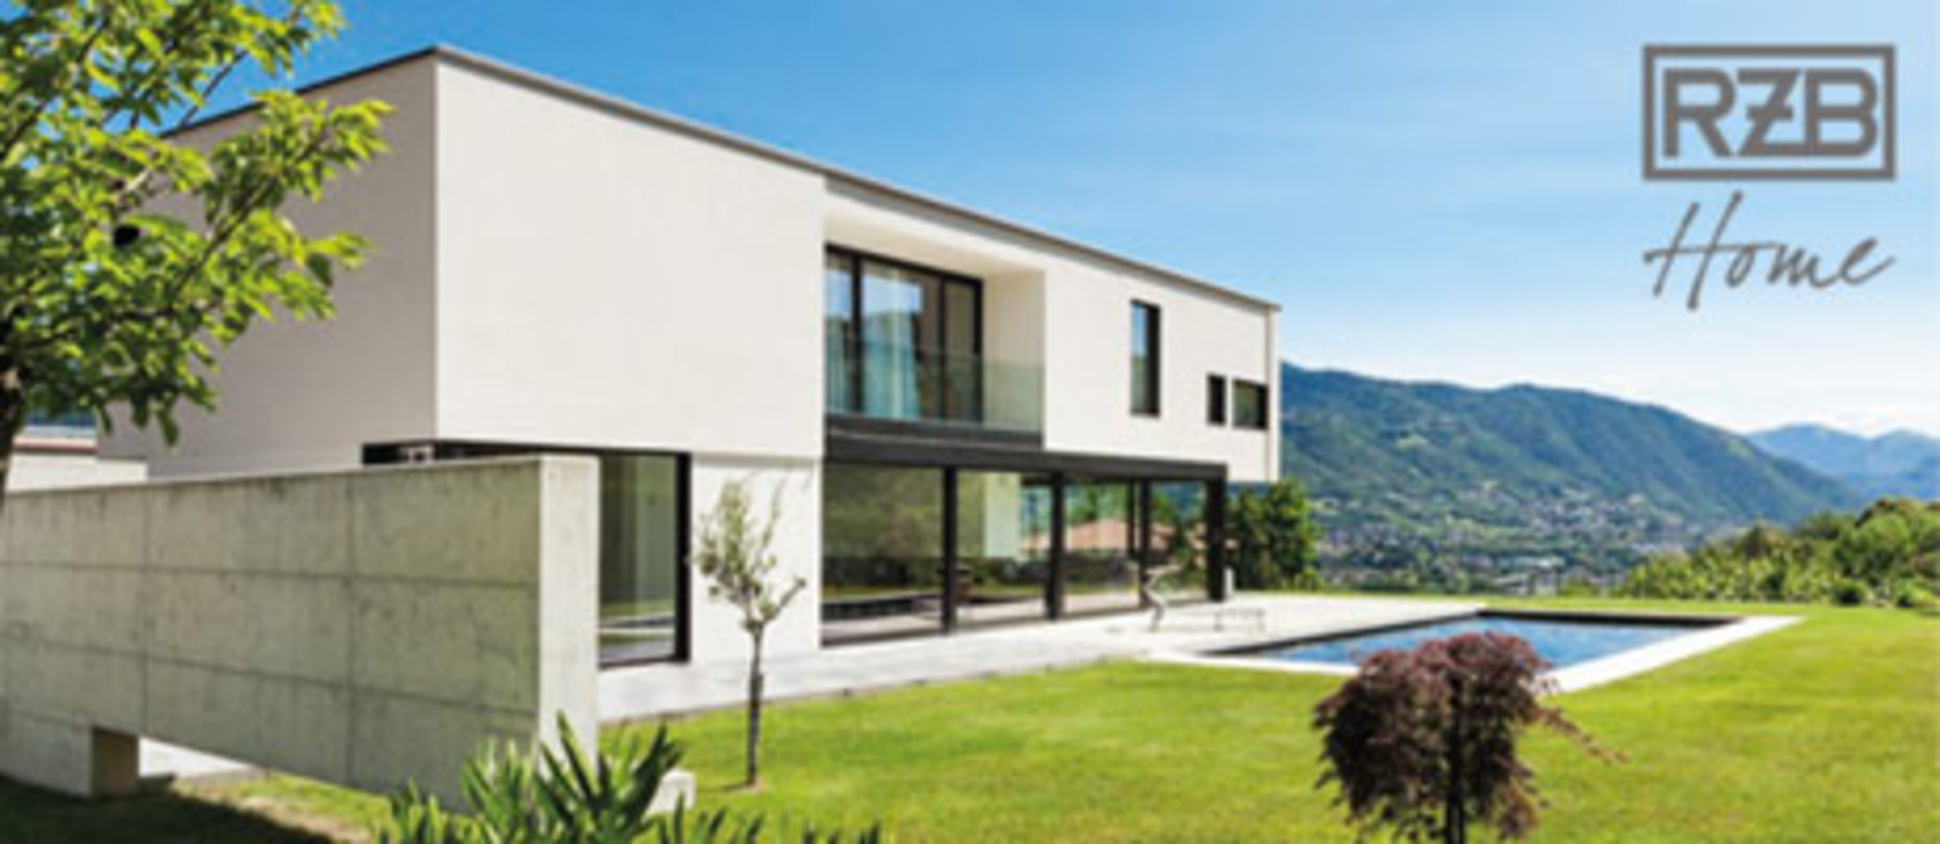 RZB Home + Basic bei Elektro Heinlein GmbH in Uttenreuth